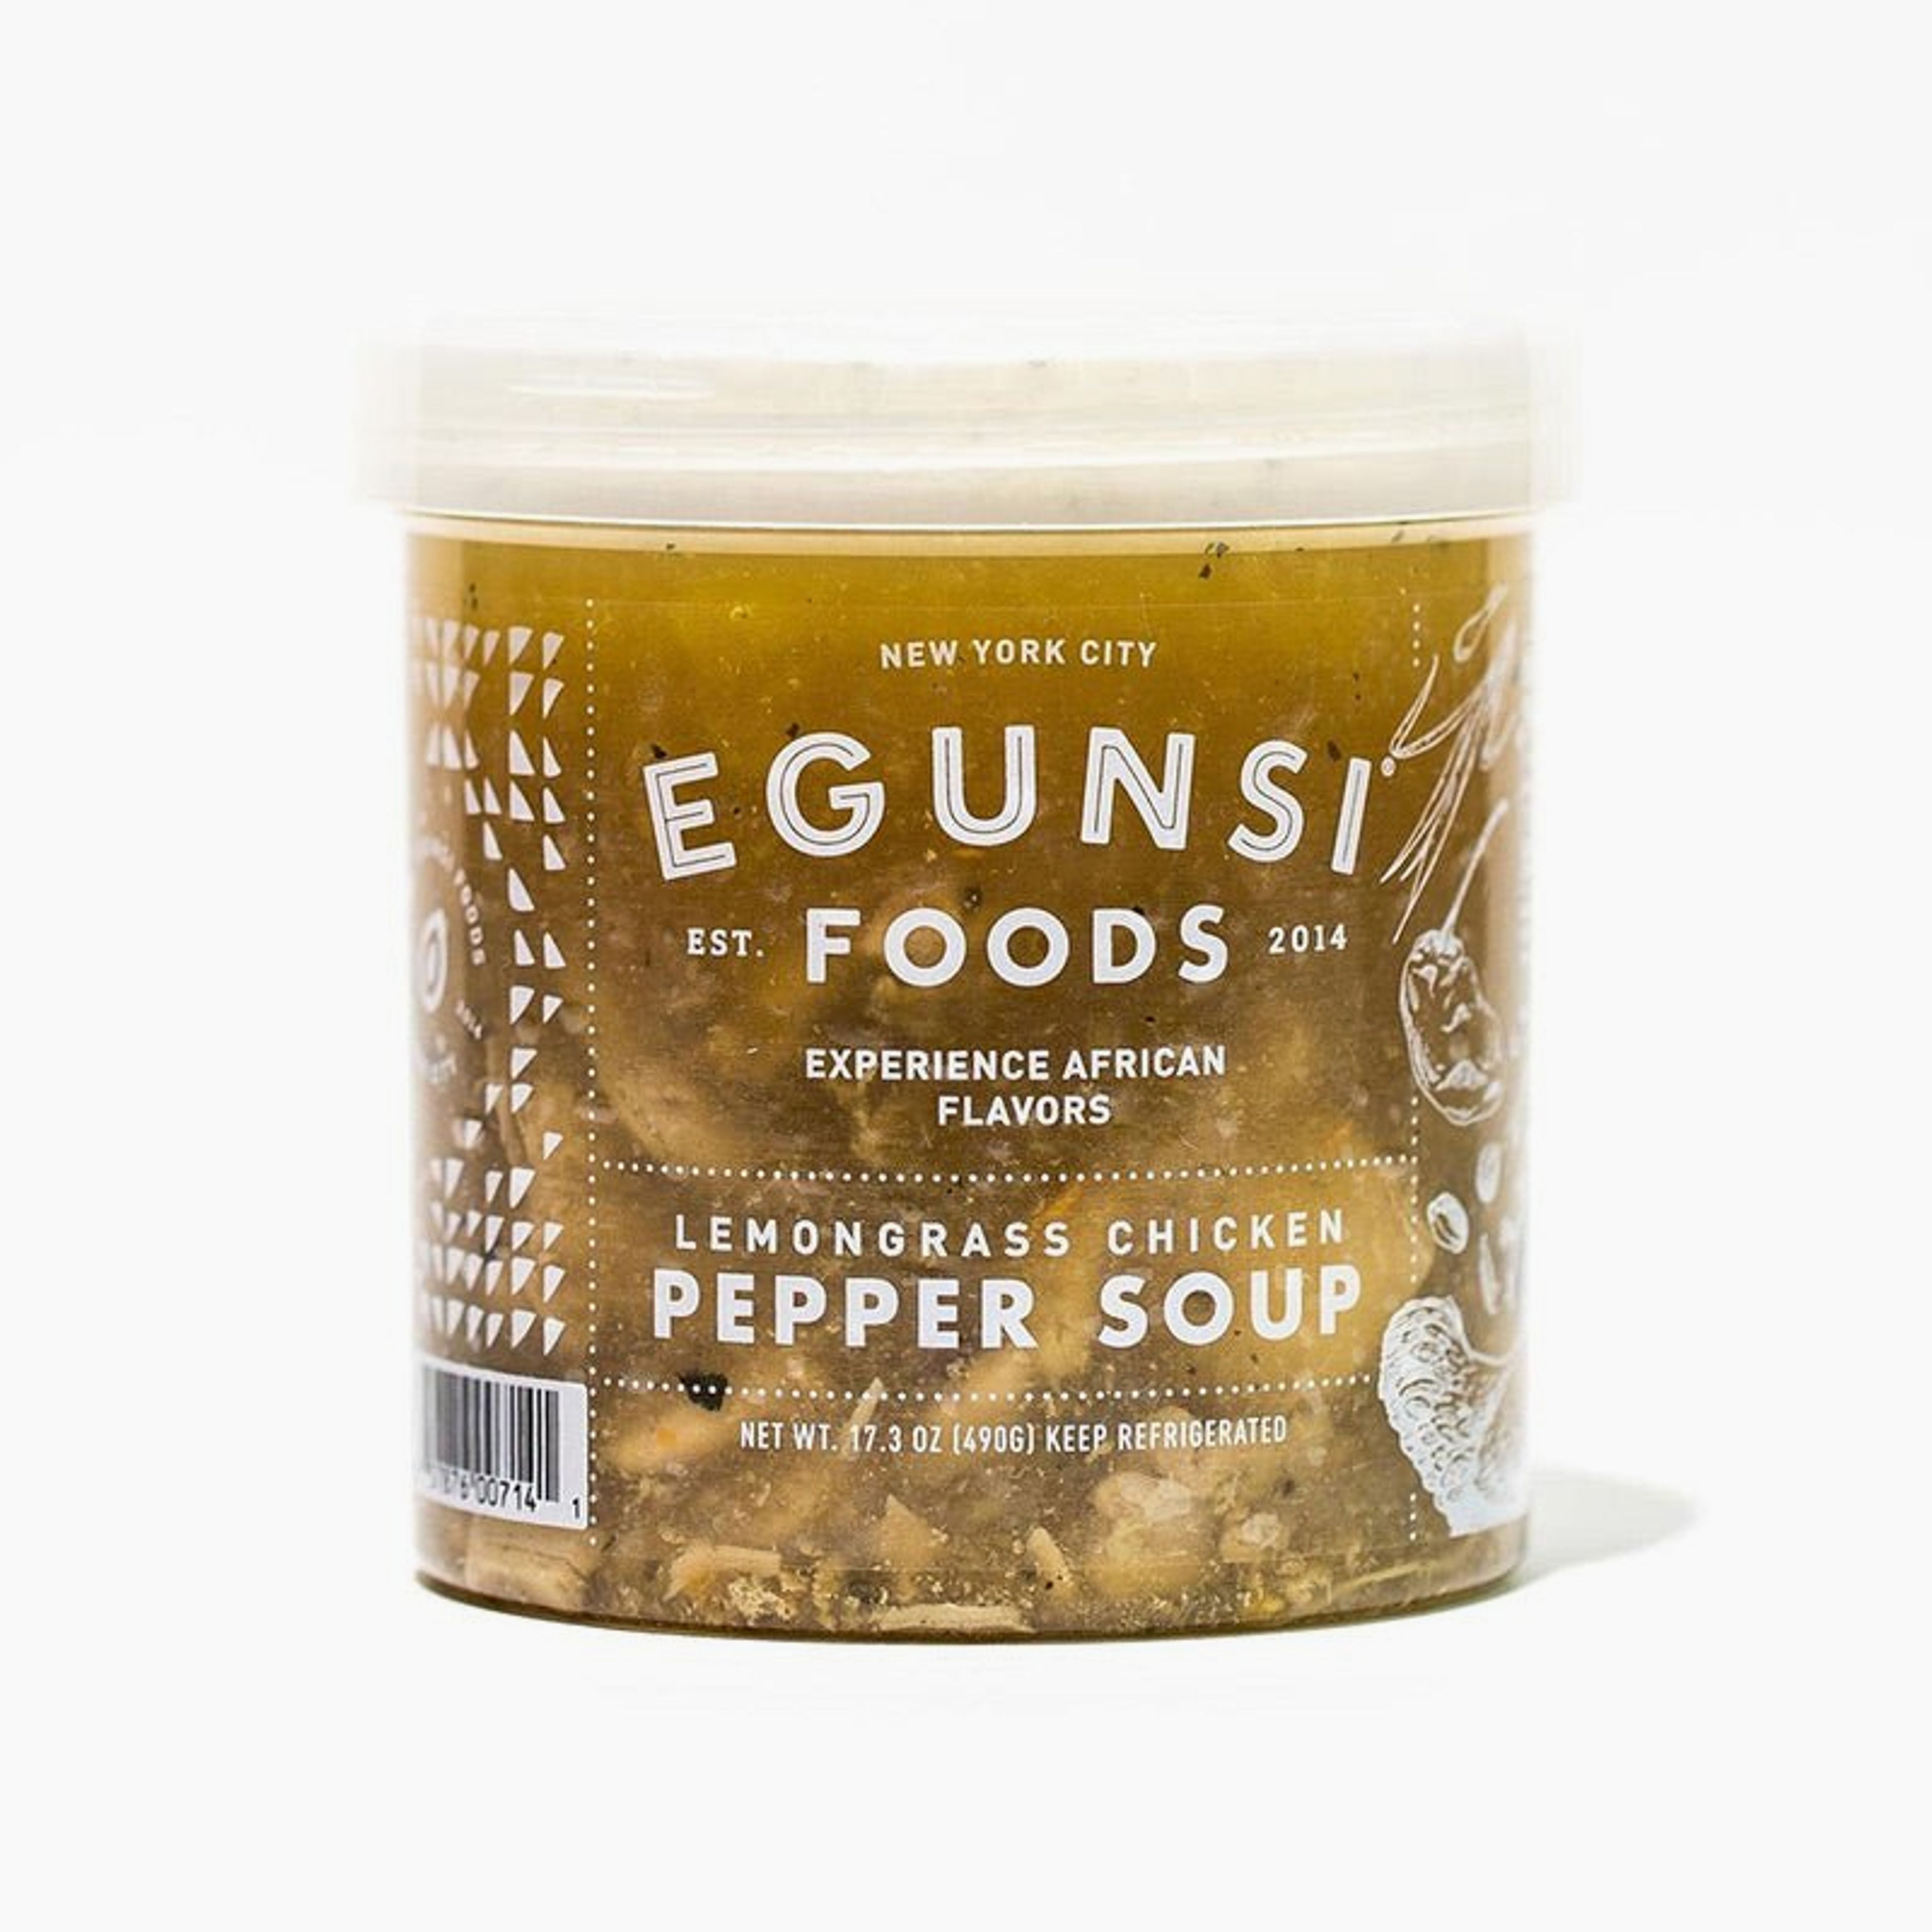 Lemongrass Chicken Pepper Soup